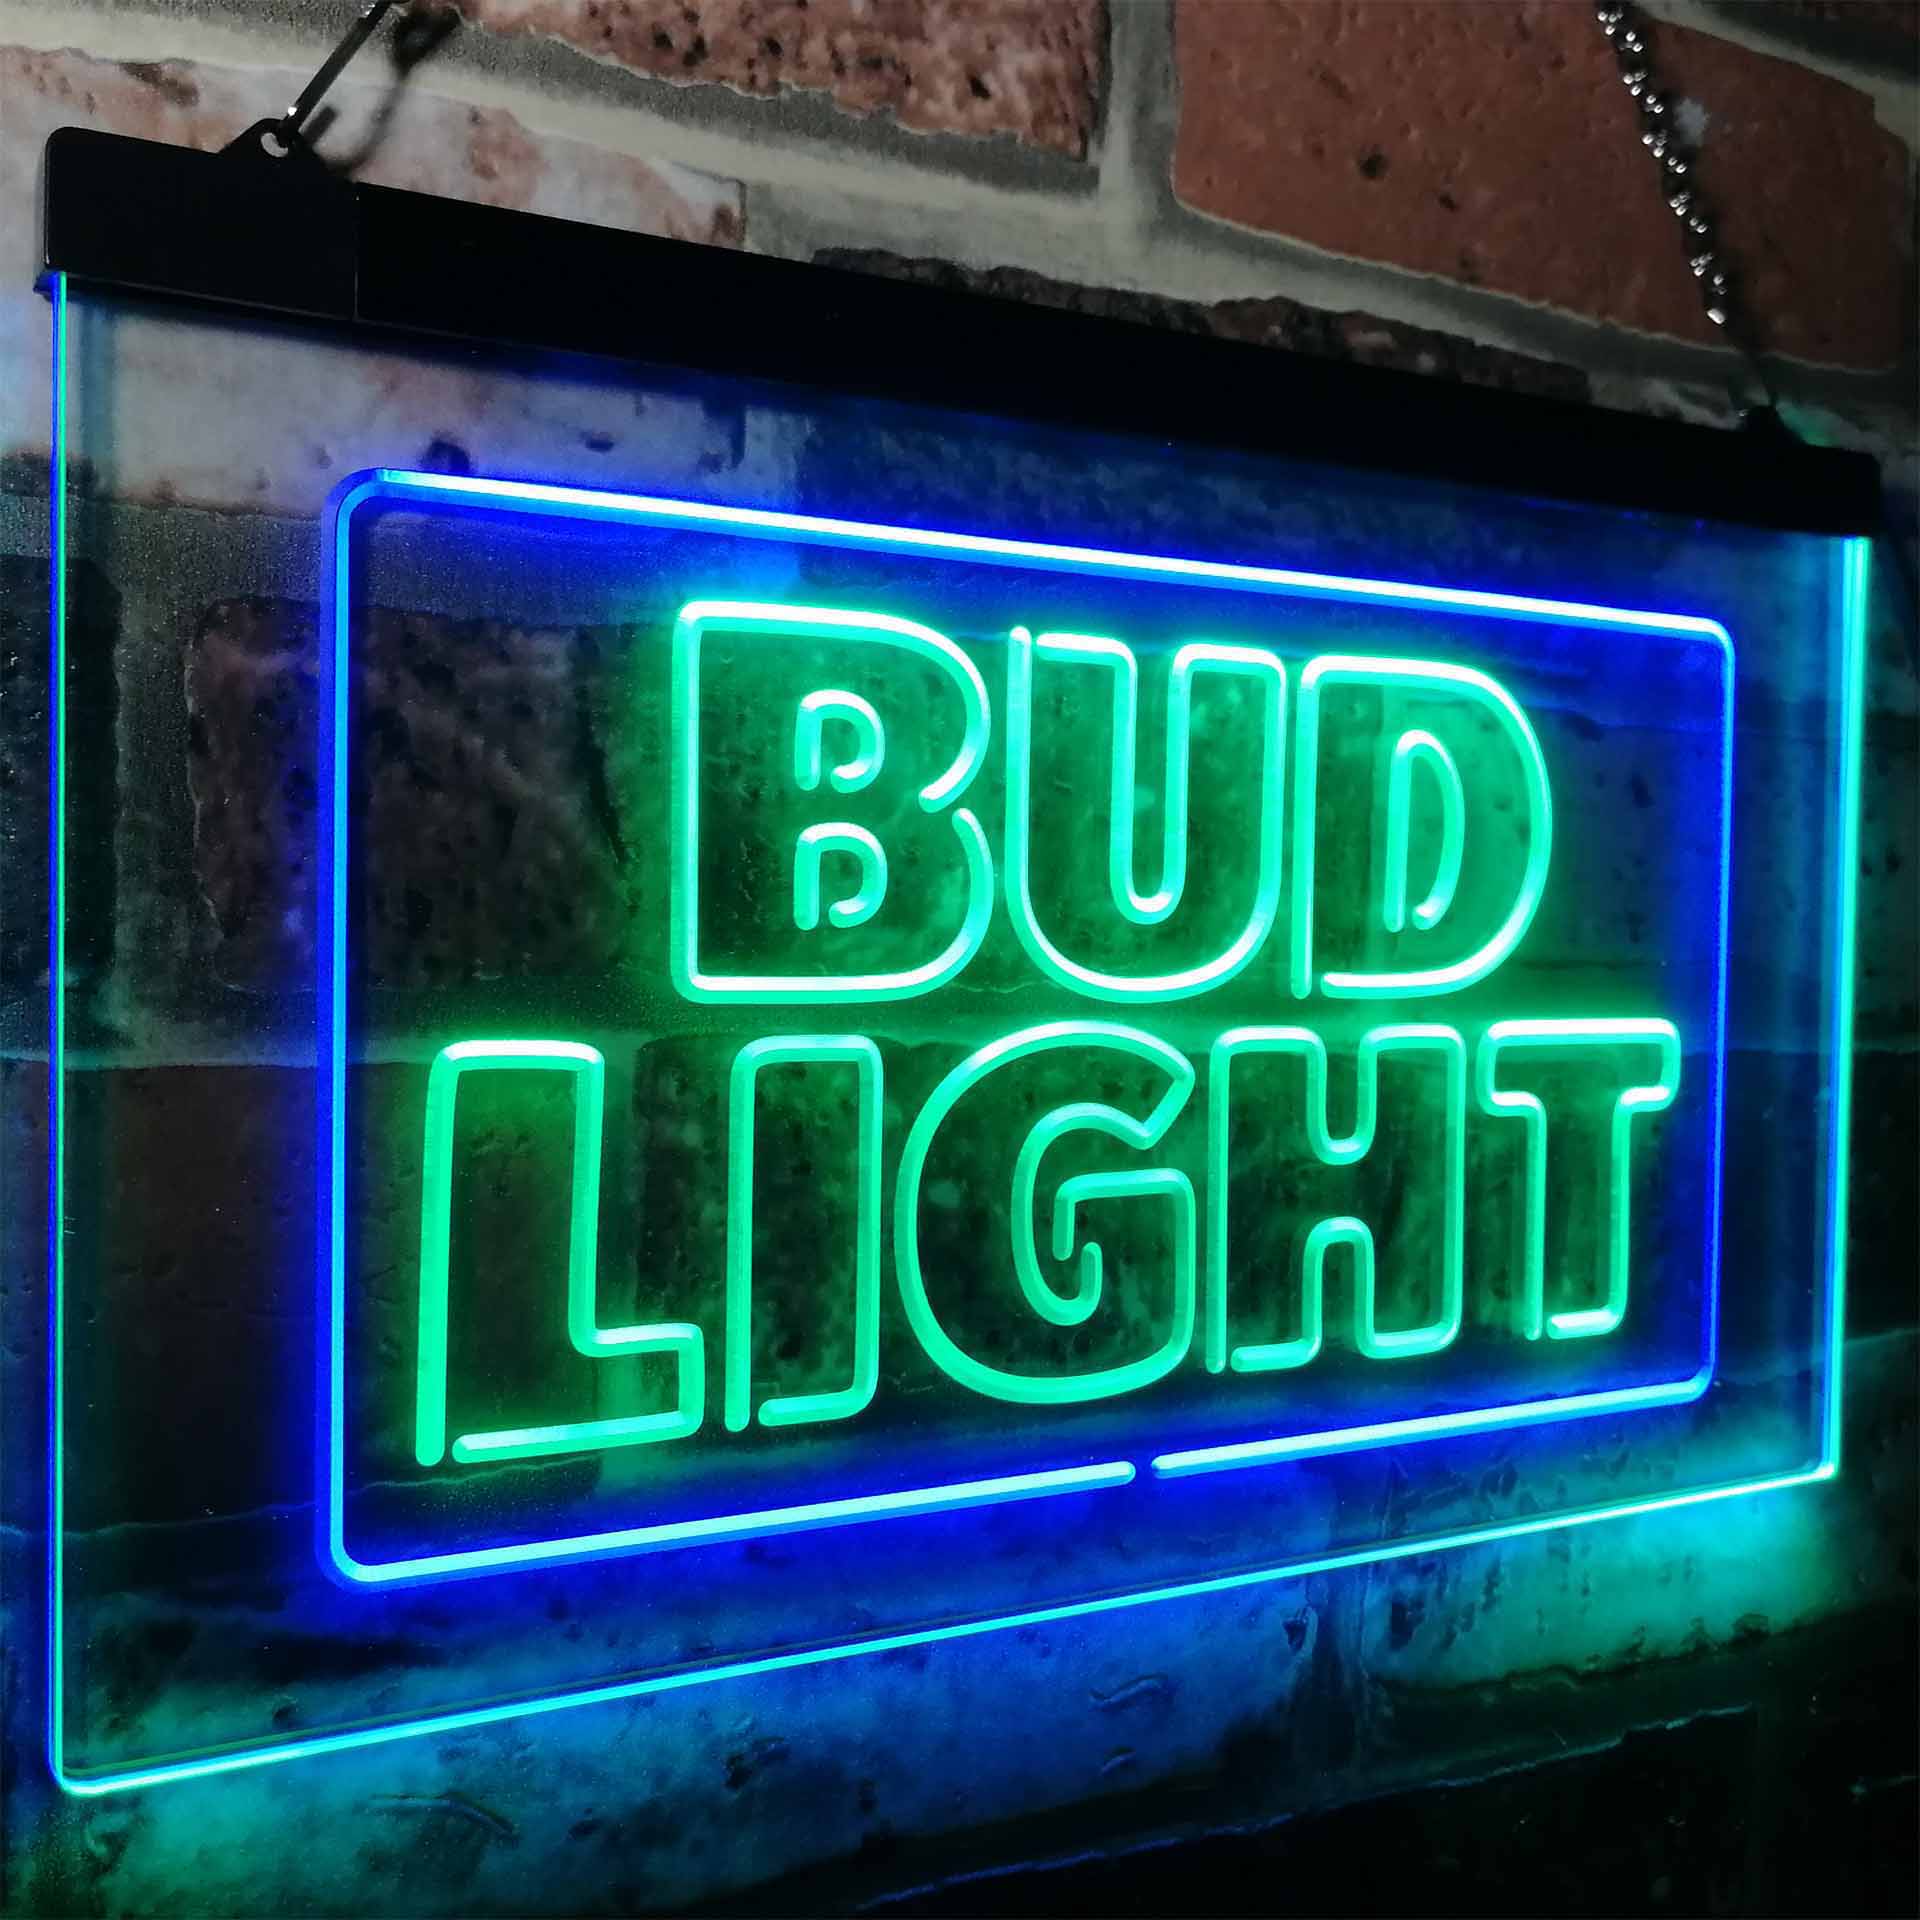 Buds Lights New Beer Bar LED Neon Sign